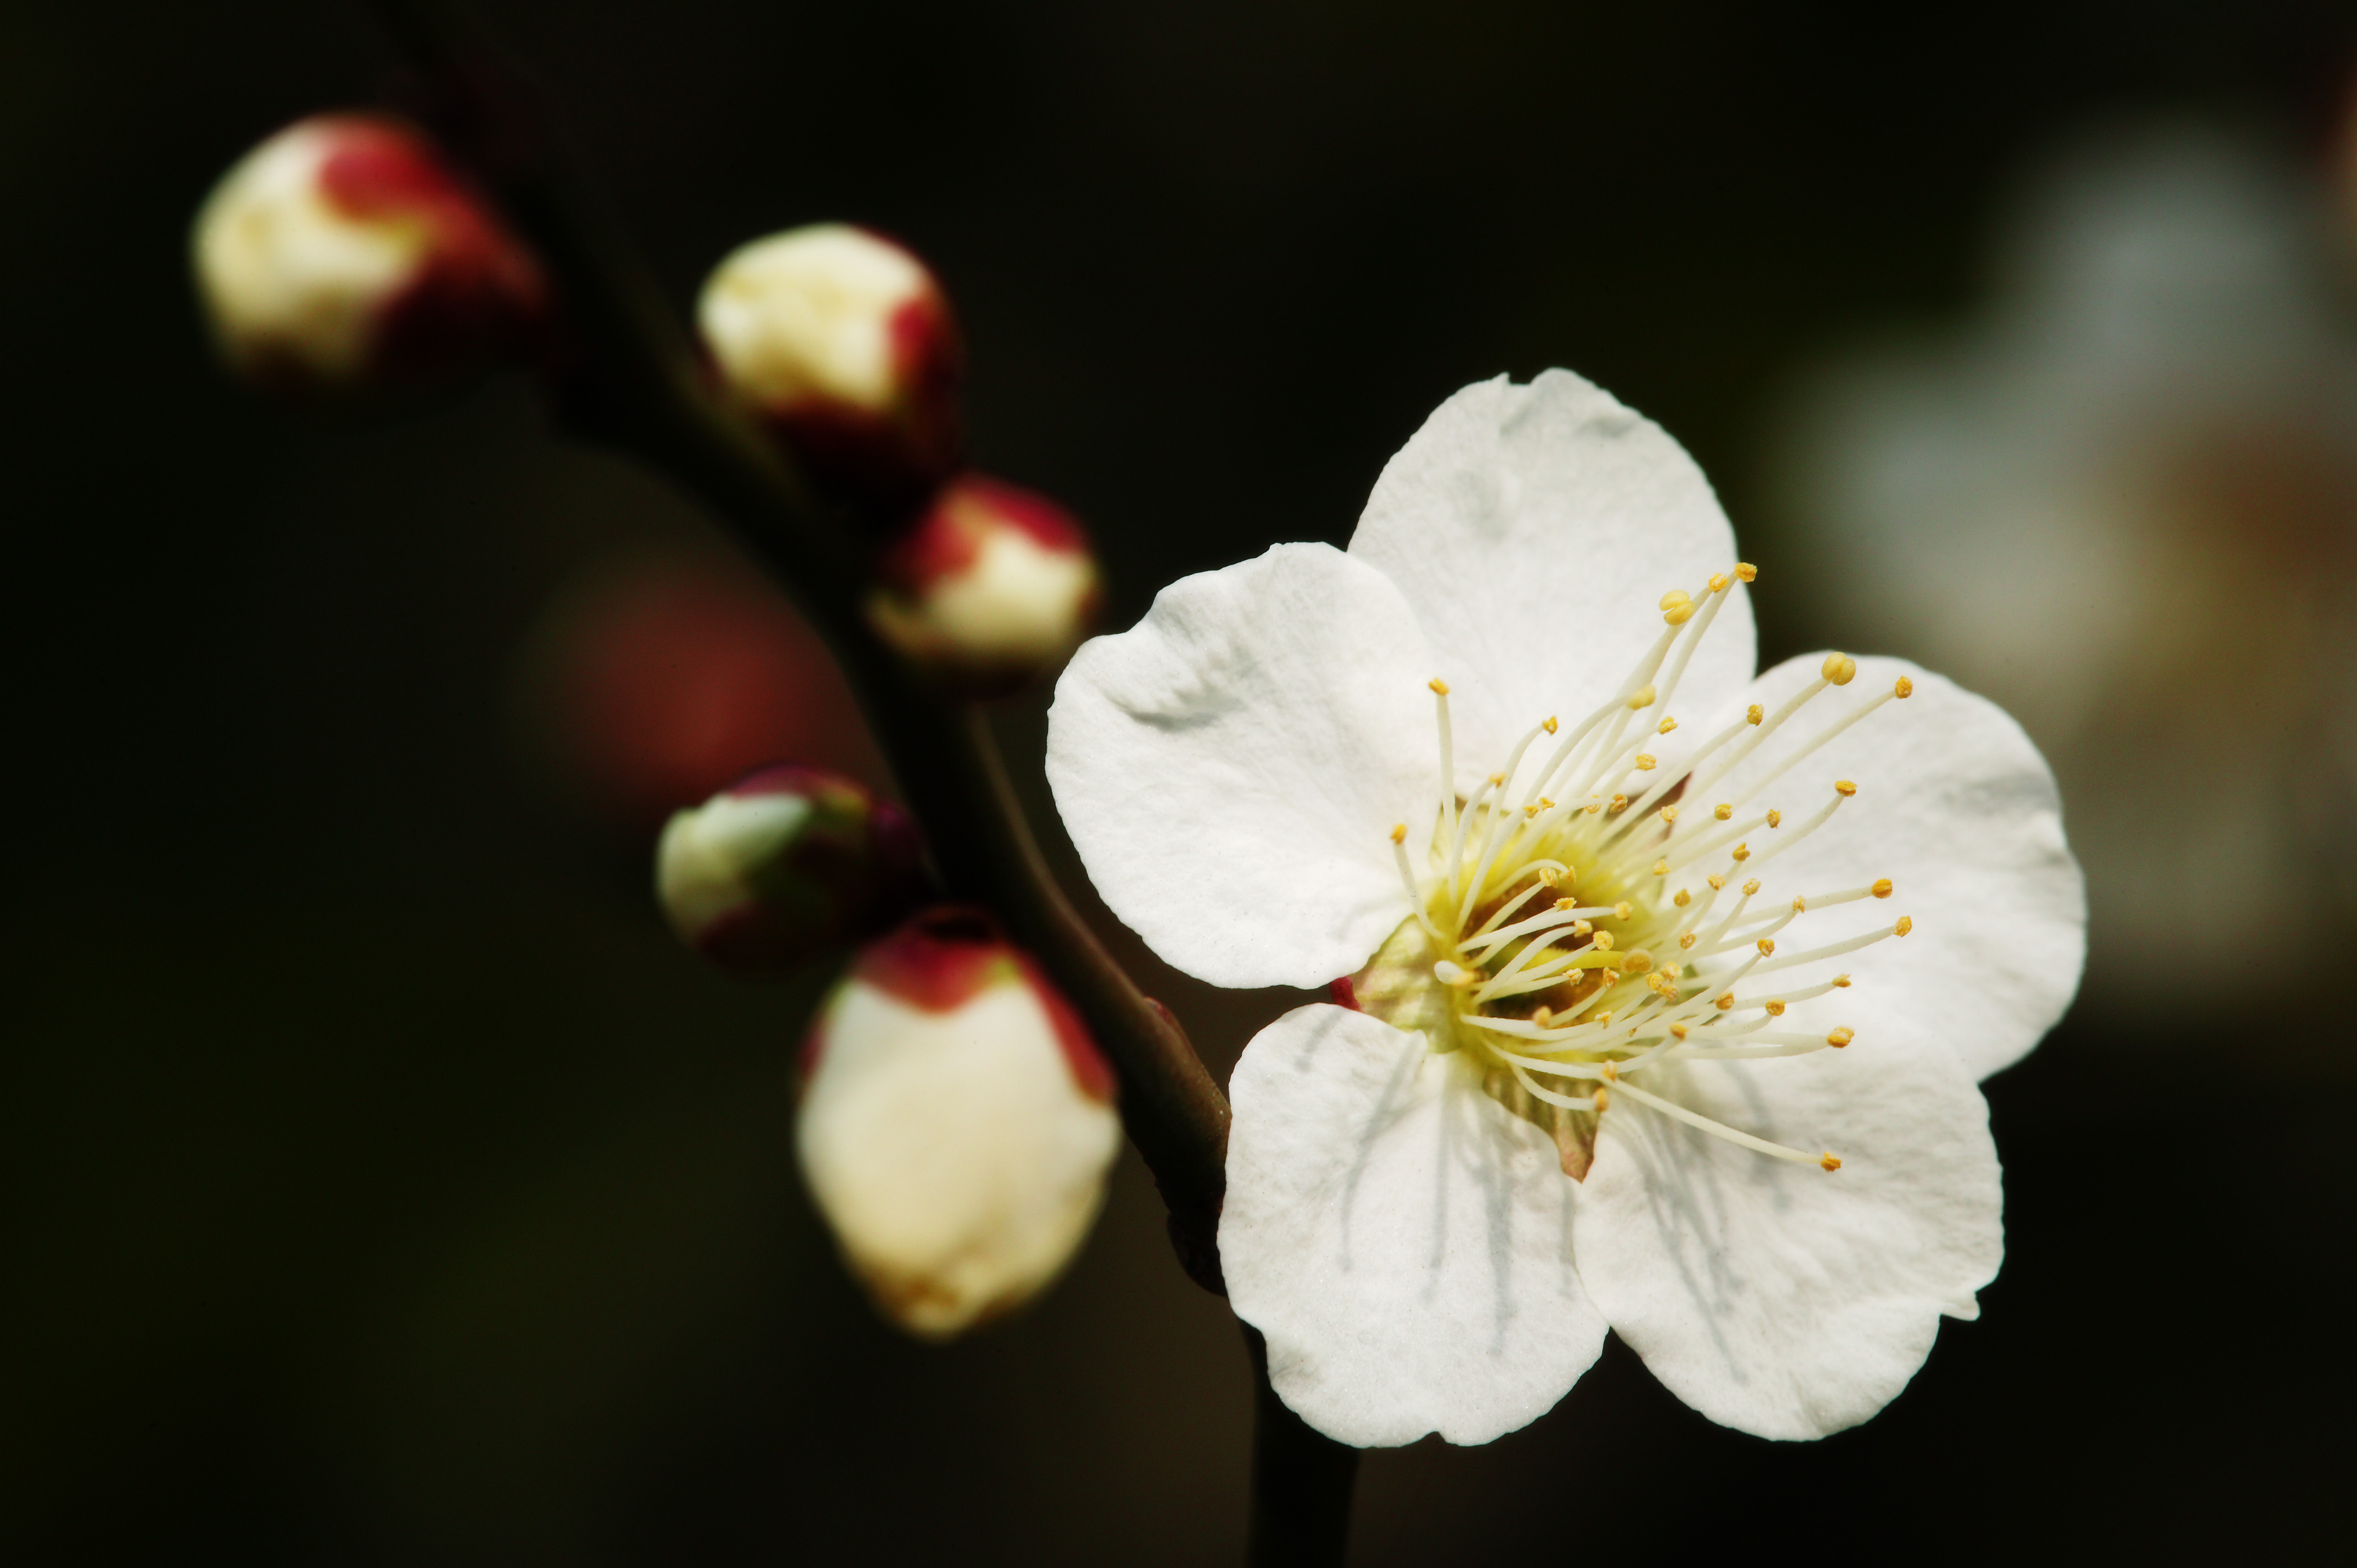 fotografia, material, livra, ajardine, imagine, proveja fotografia,Uma flor de uma ameixa, Branco, ameixa, , ptala